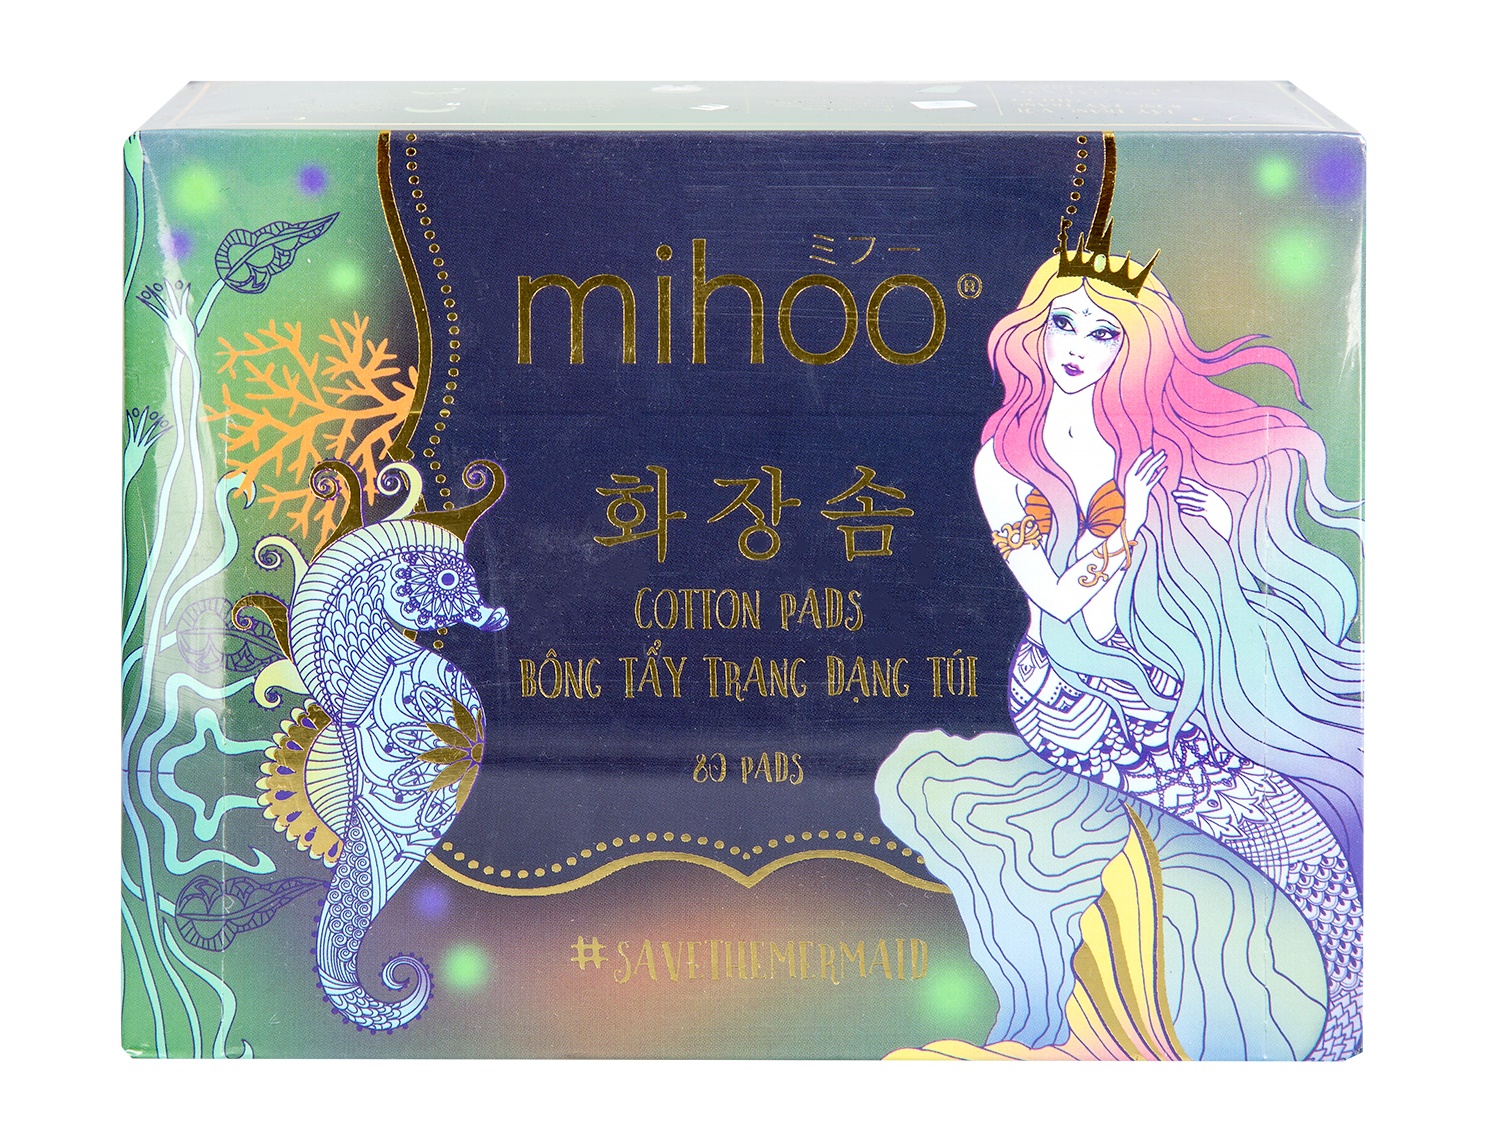 Bông Tẩy Trang Dạng Túi Xỏ Ngón Mihoo Mermaid Cotton Pads Hộp 80 Miếng